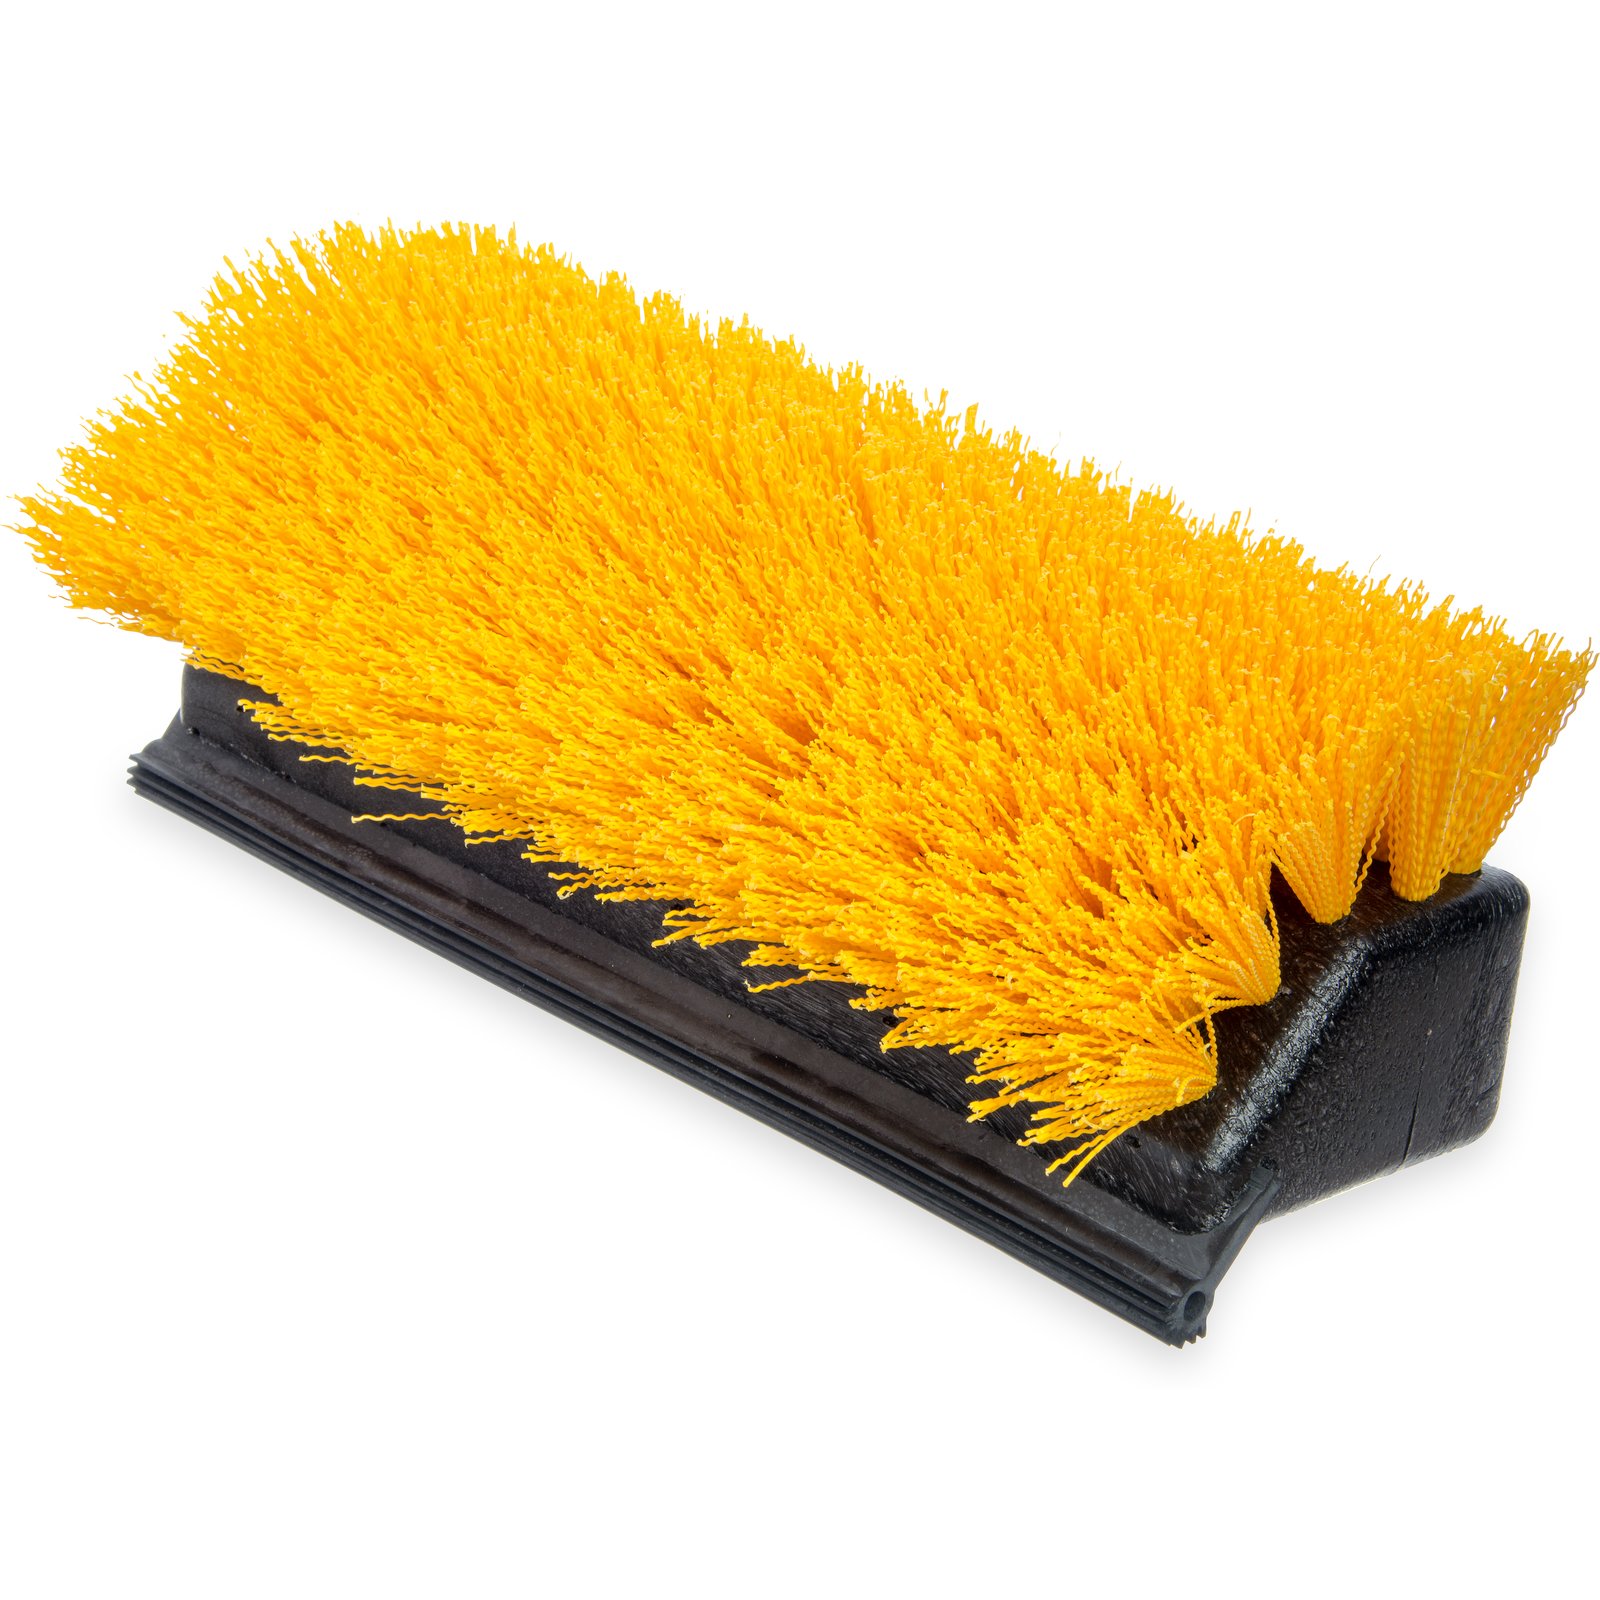 Lavex 10 Bi-Level Floor Scrub Brush with Squeegee